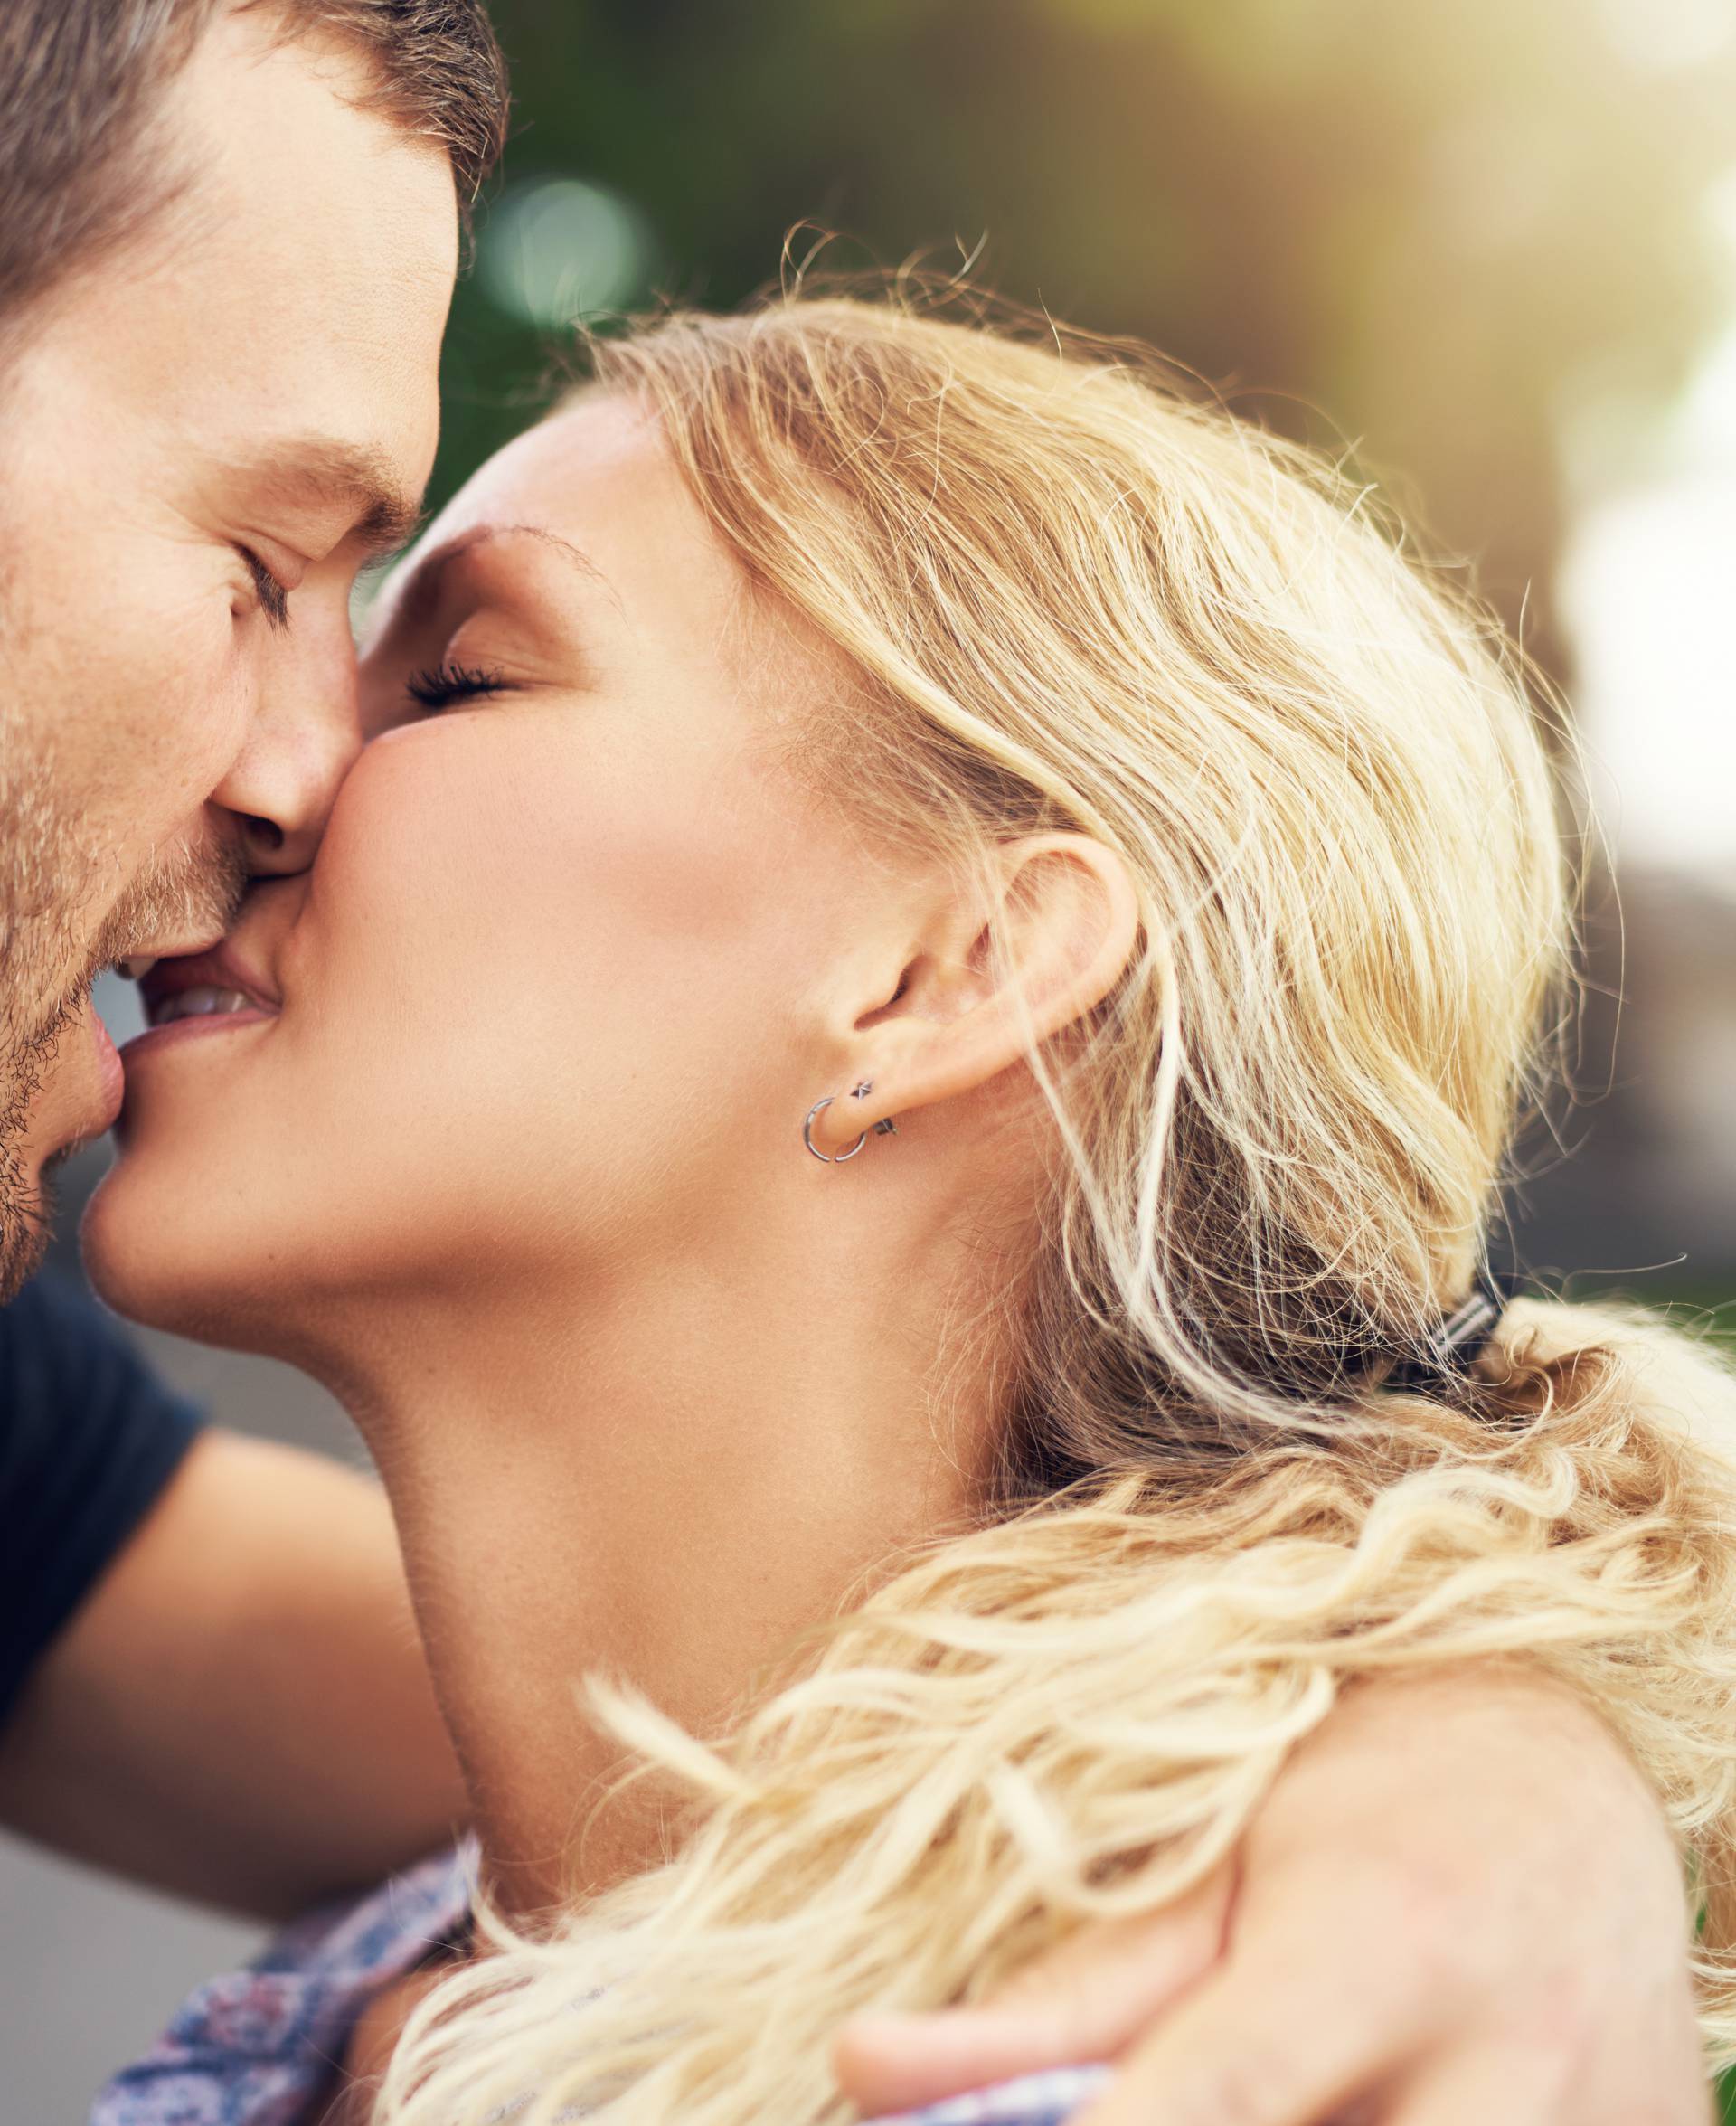 5 bolesti koje možete dobiti od ljubljenja - u samo 10 sekundi